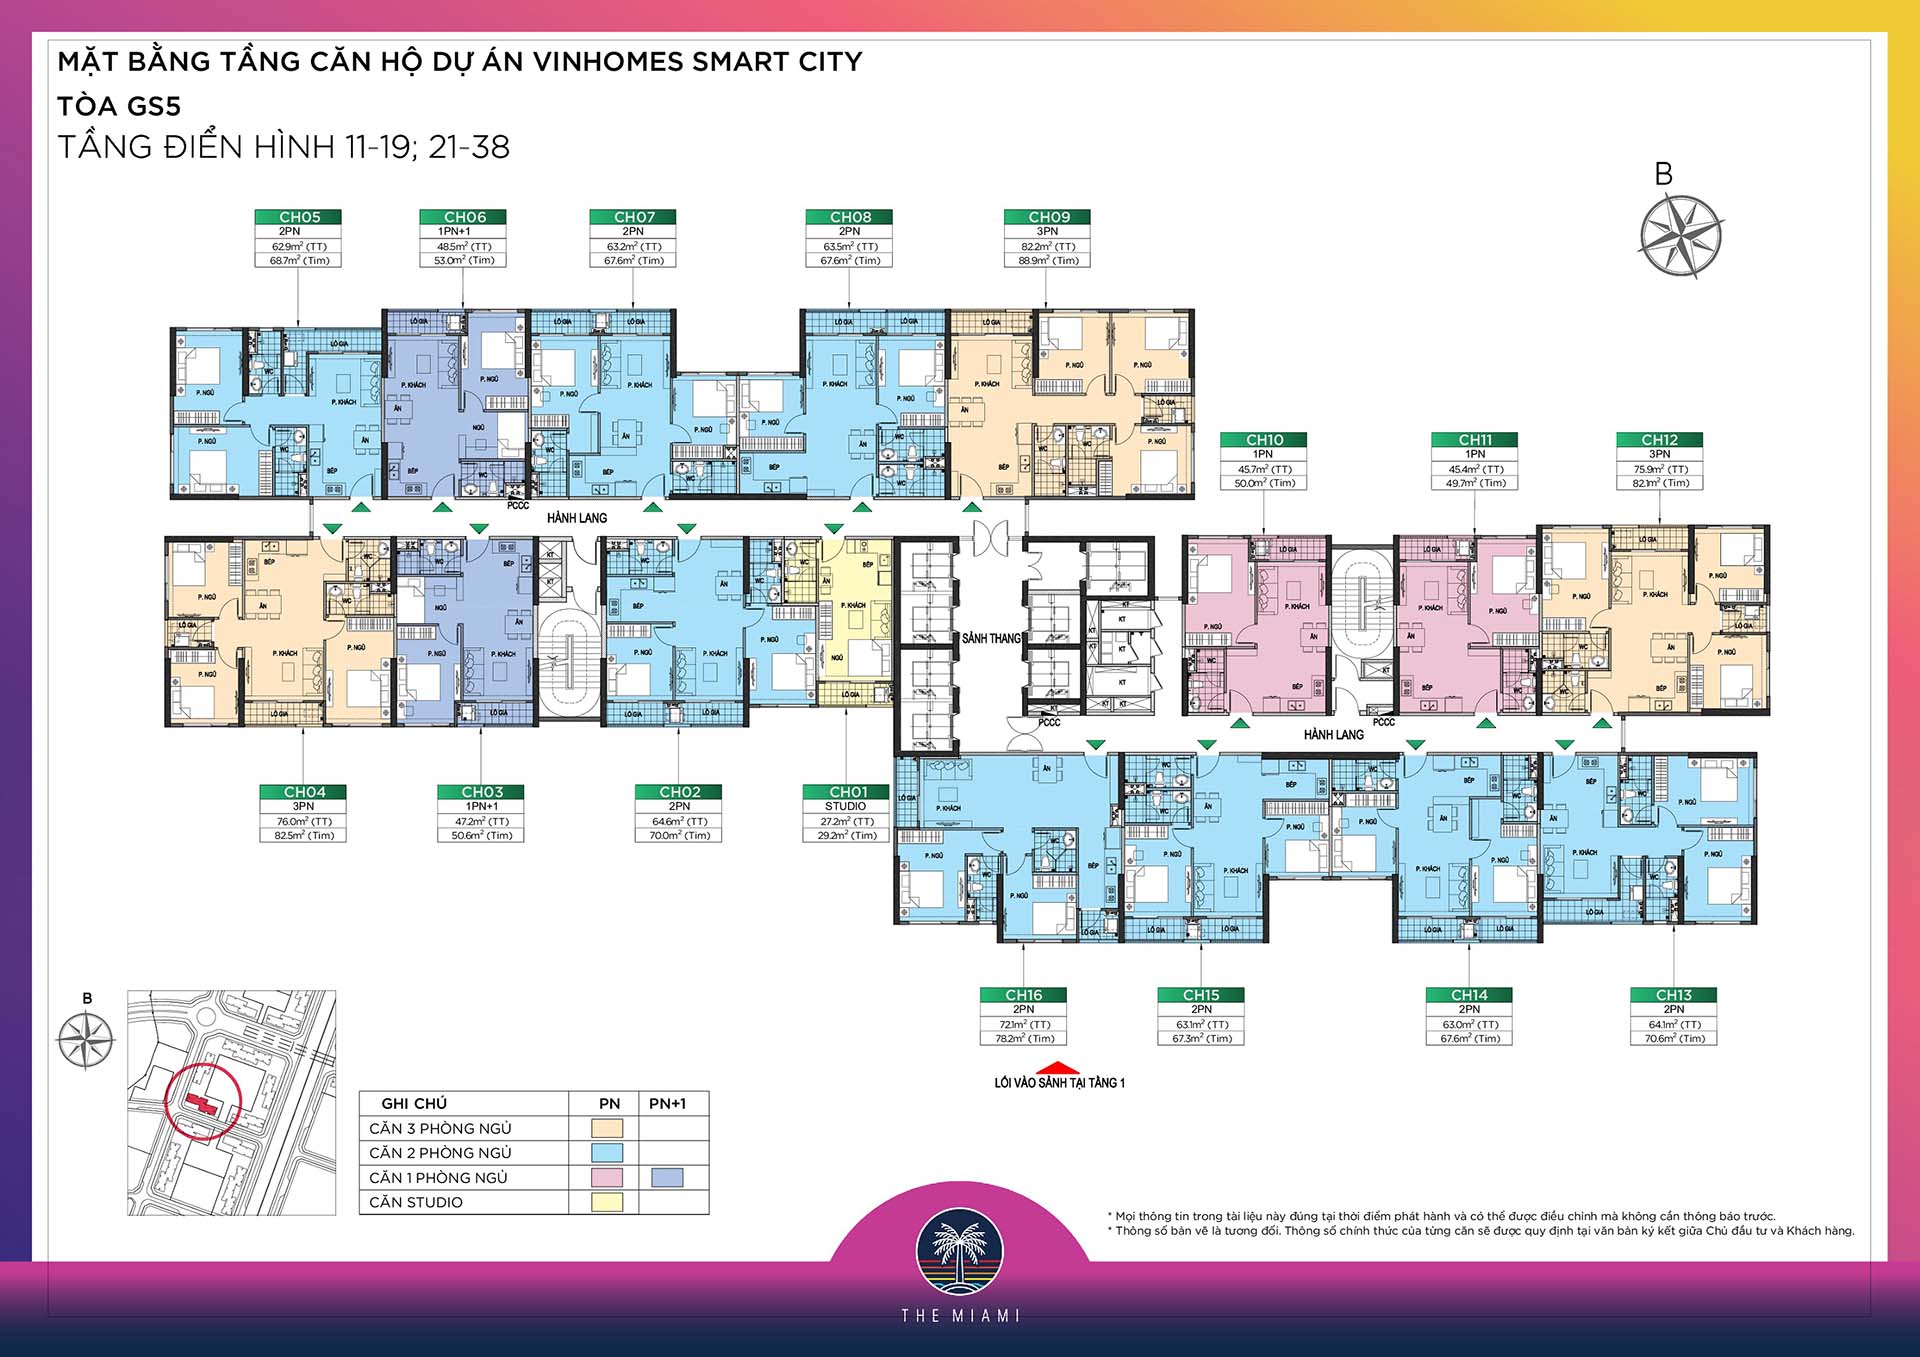 Cho thuê ngay căn hộ 1PN +1 diện tích 48,2m2 tòa GS5 The Miami Vinhomes Smart City